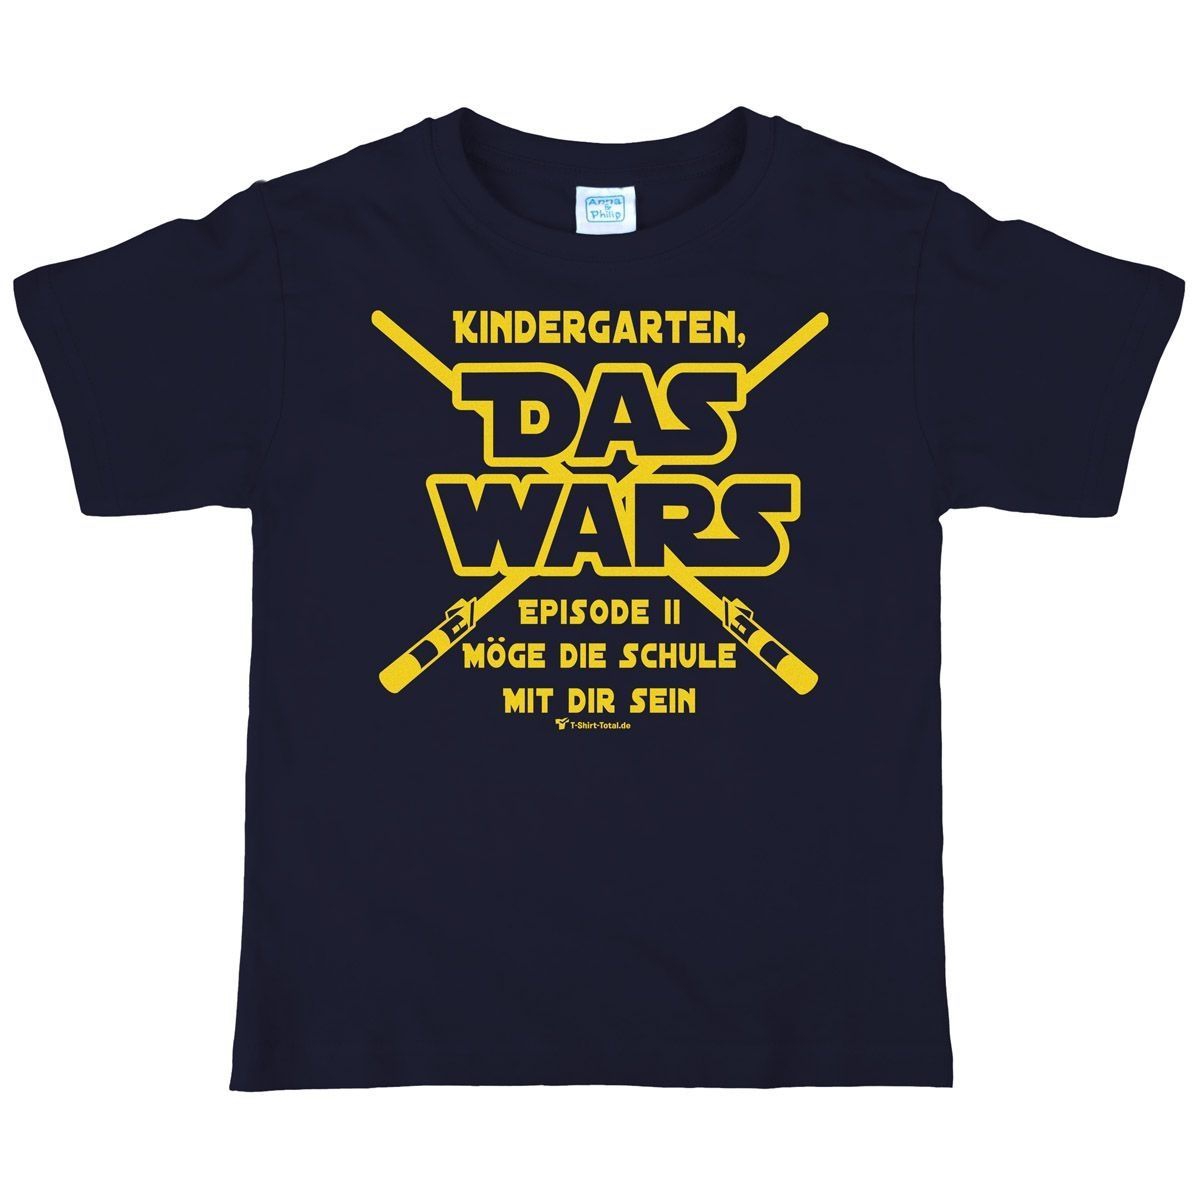 Das wars Kindergarten Kinder T-Shirt navy 122 / 128